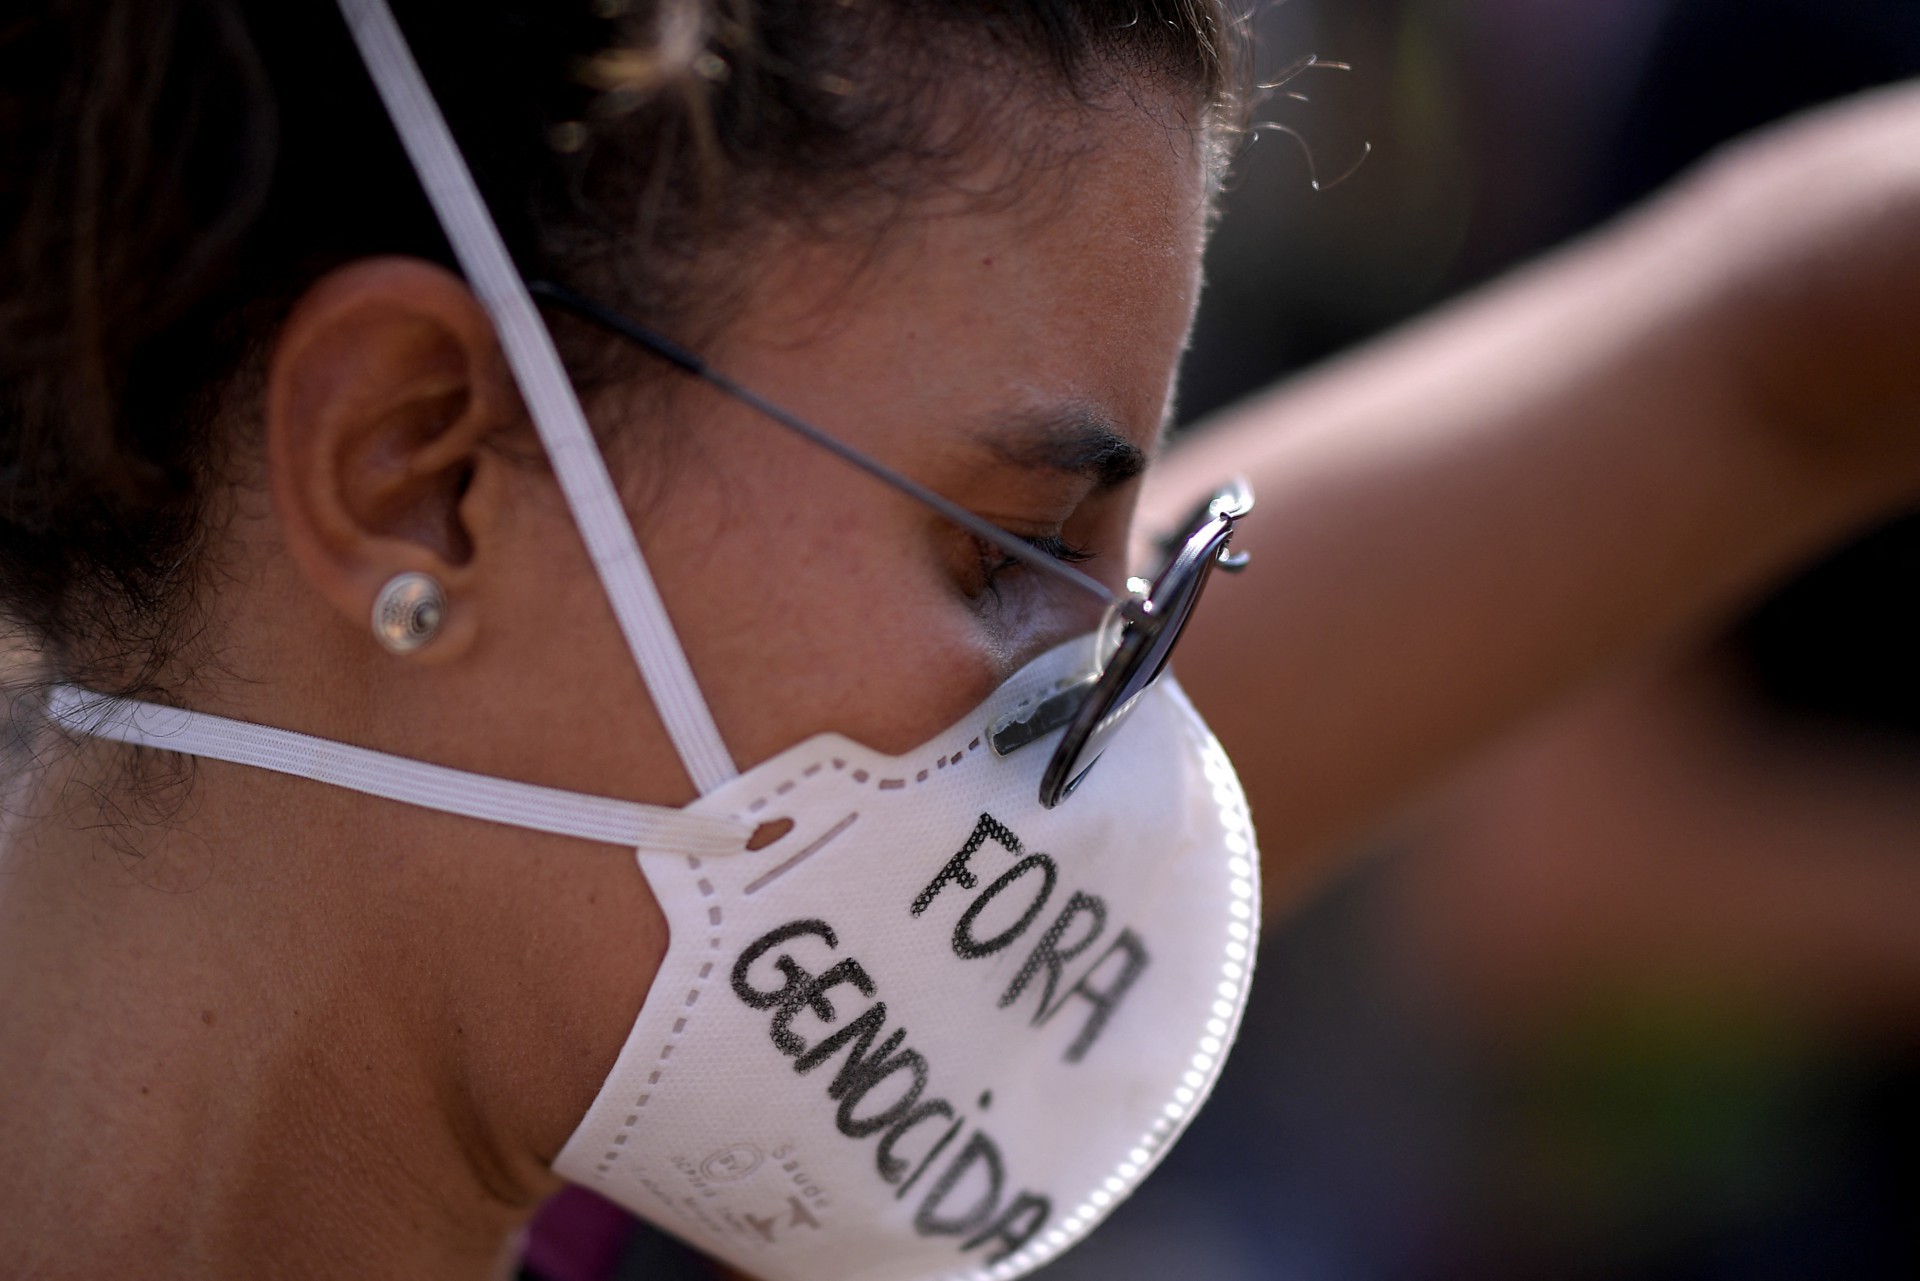 VEÍCULOS ressaltaram de maneira crítica a postura de Bolsonaro na pandemia (Foto: DOUGLAS MAGNO / AFP)